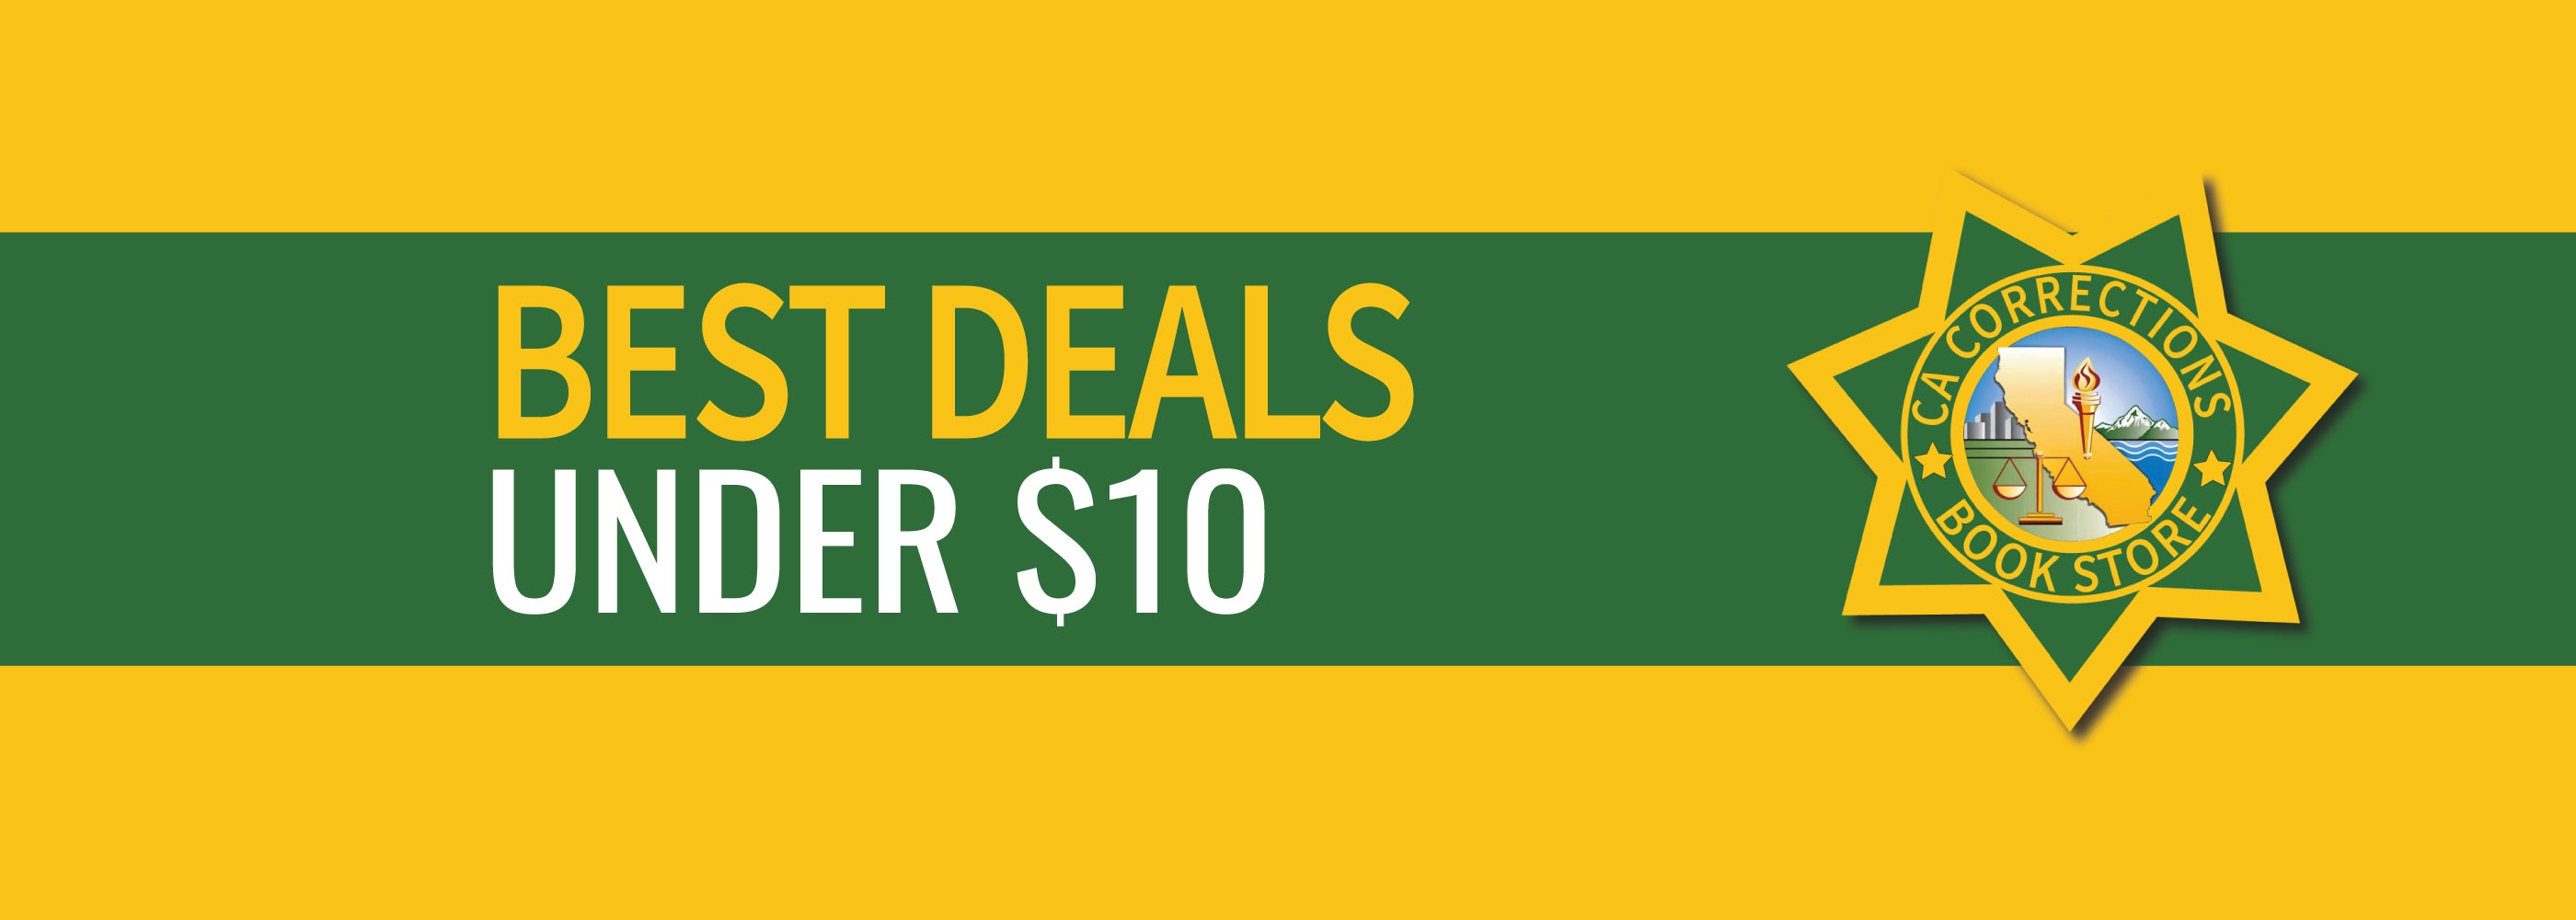 Best Deals Under $10